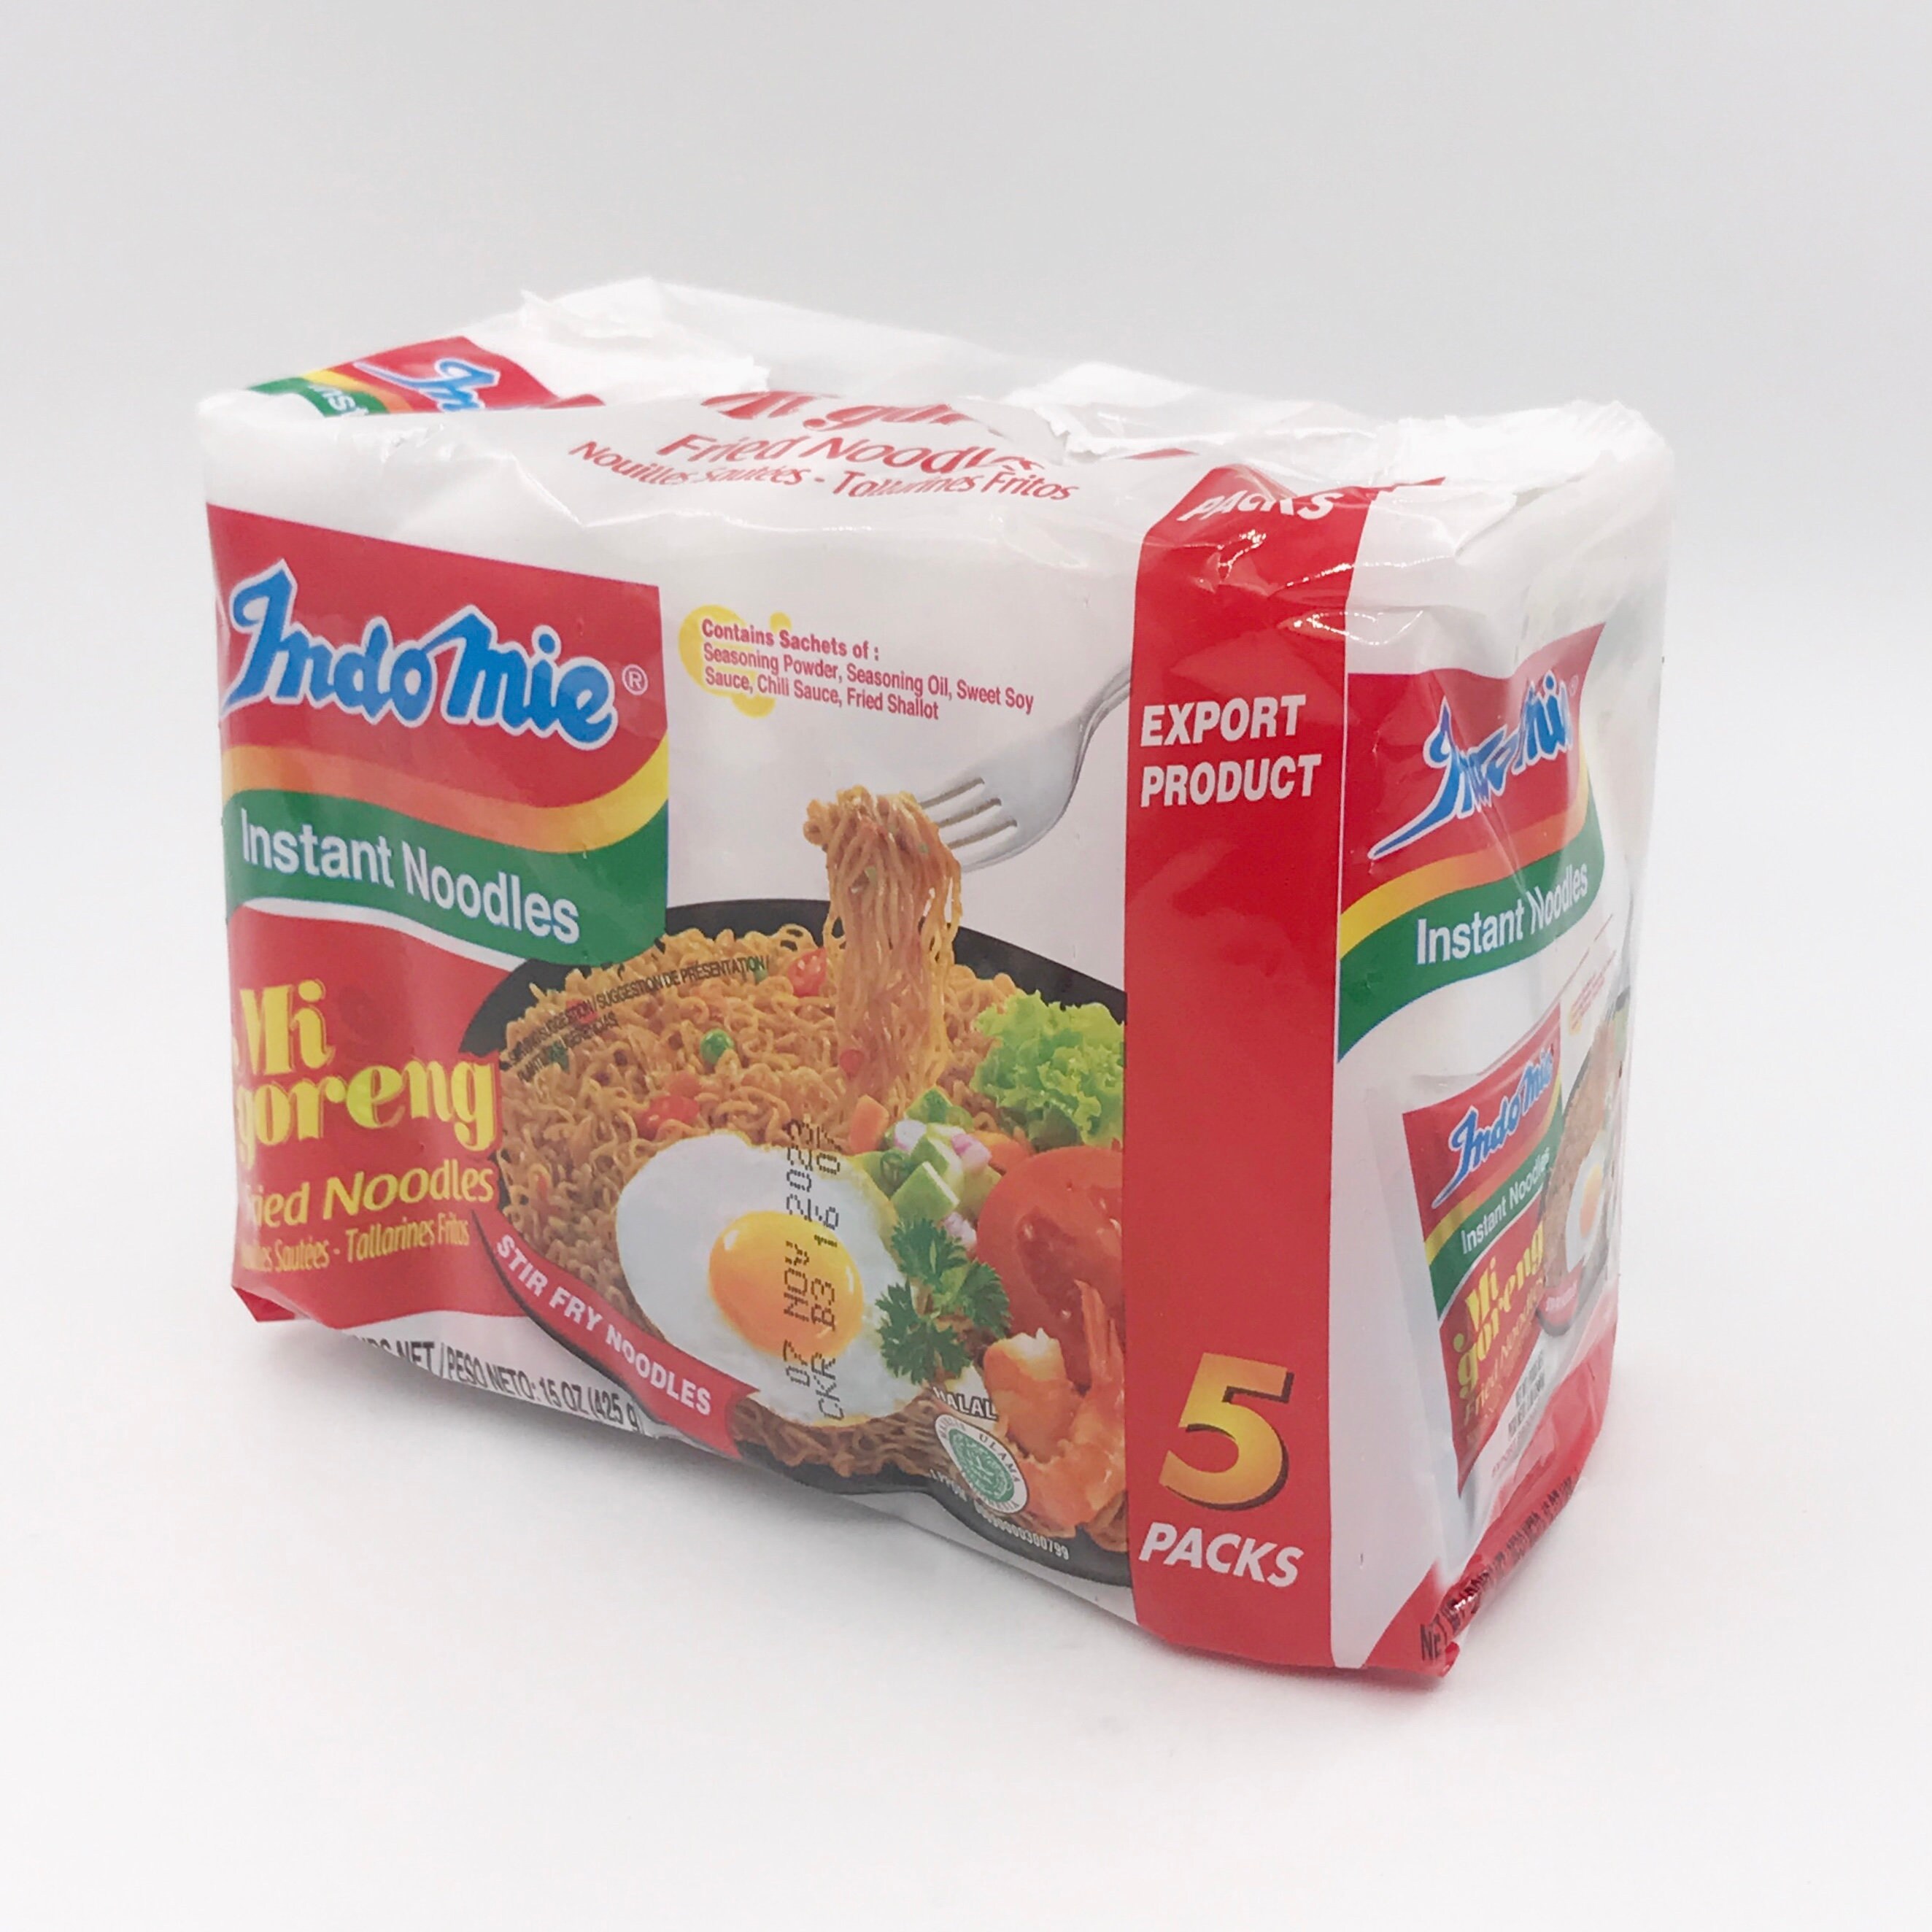 Indomie Instant Noodles Noodles Fried Packs 5 Etsy Goreng Mi 